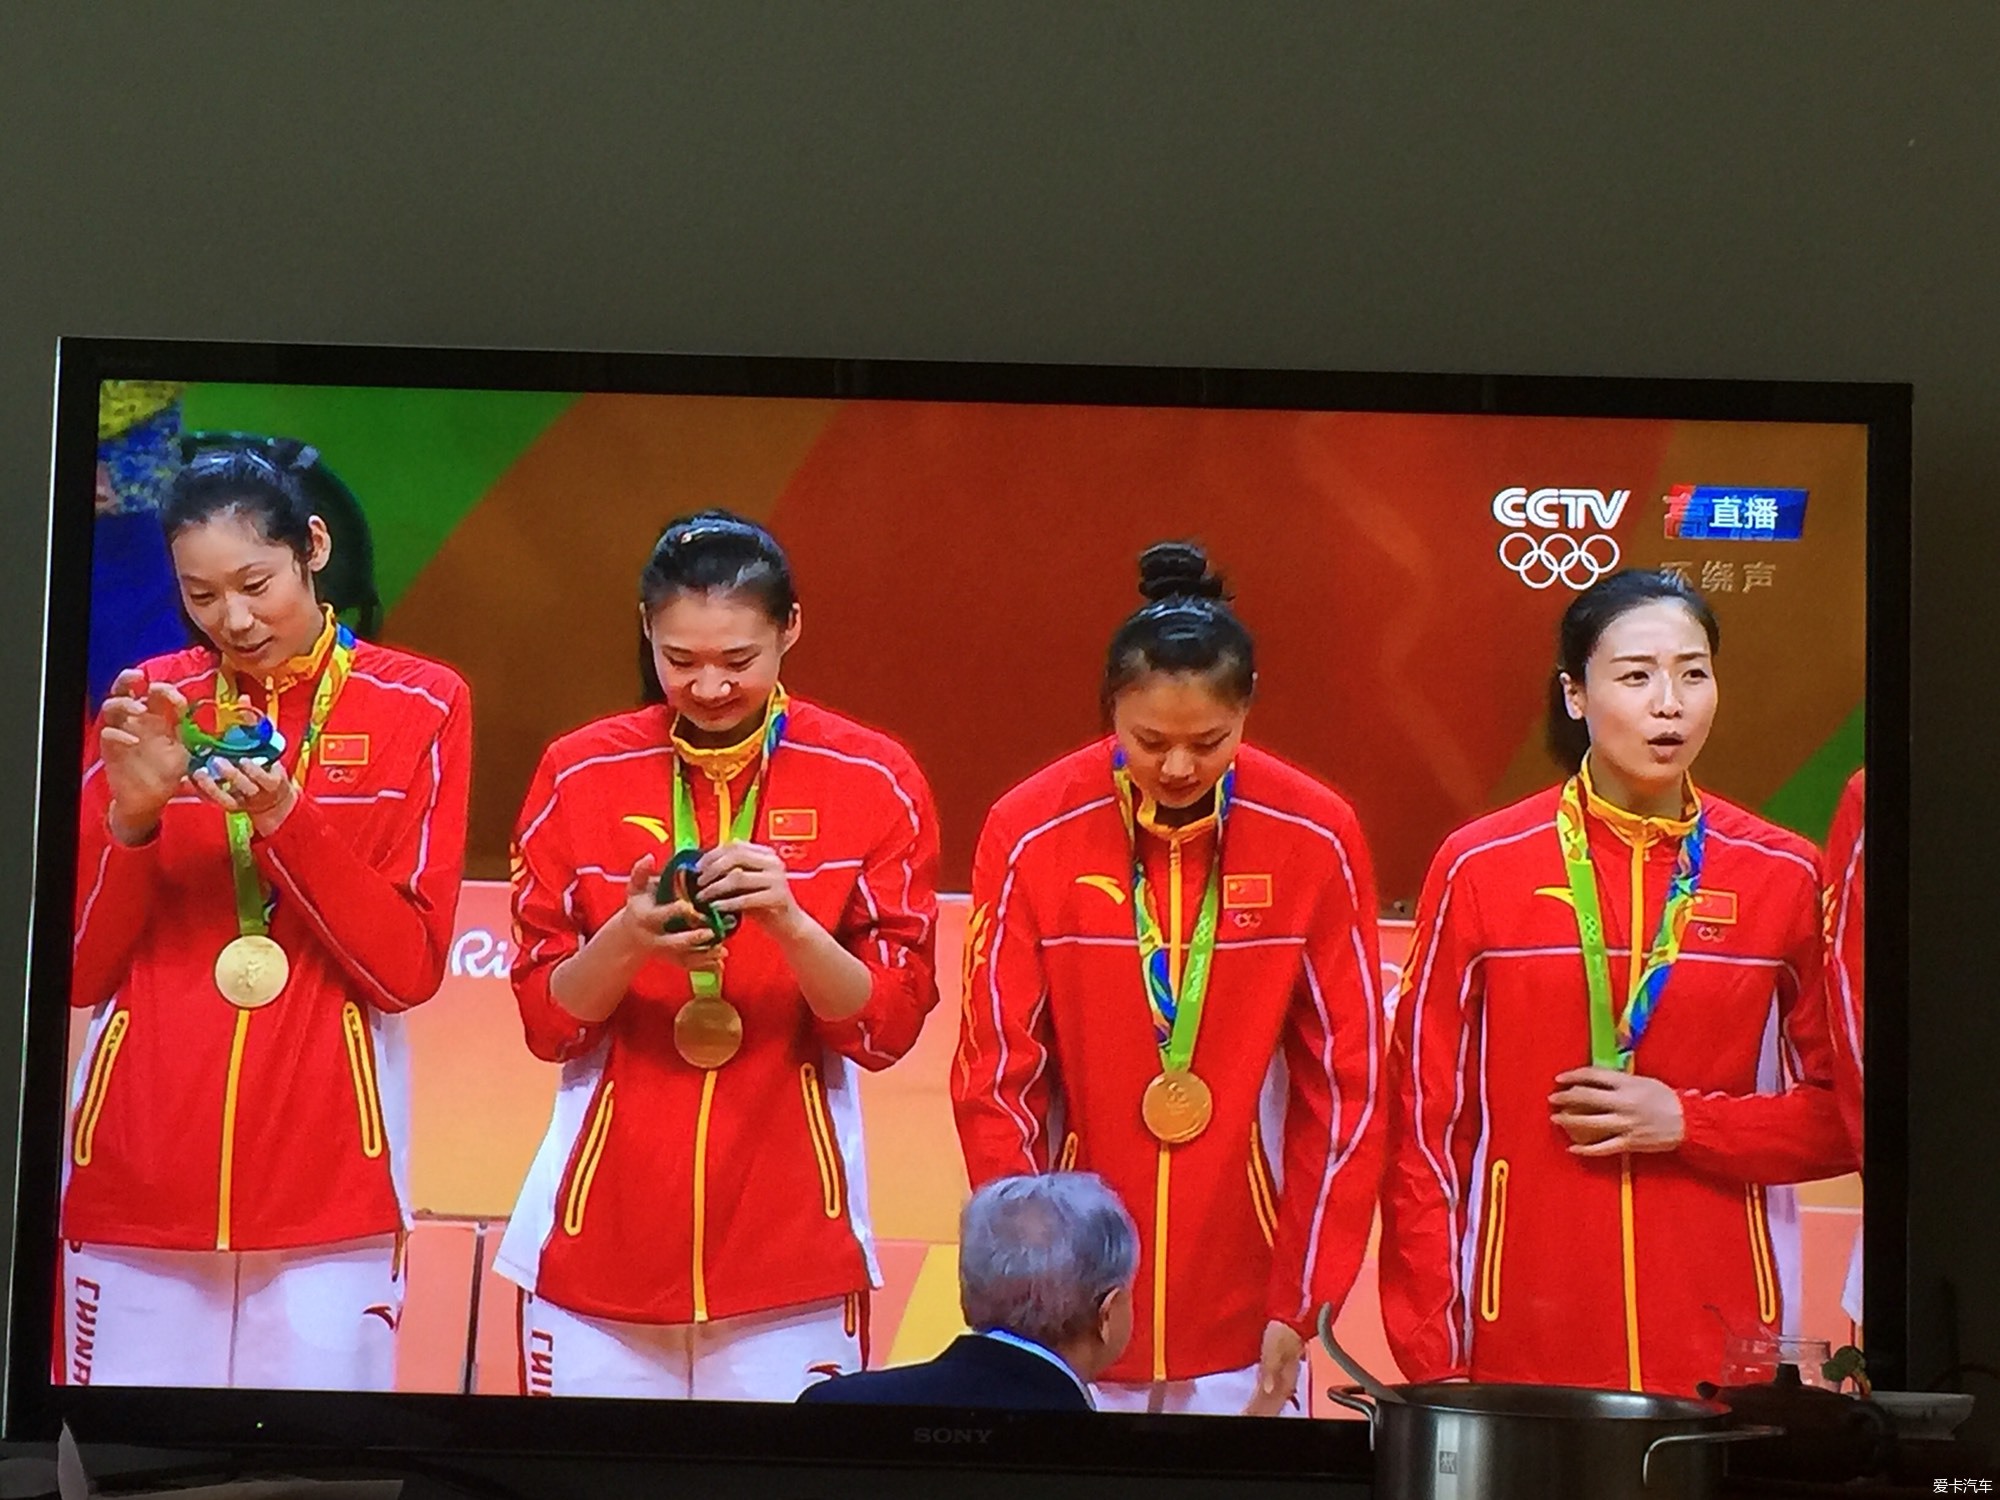 女排队员拿到金牌的第一反应_北京汽车论坛_